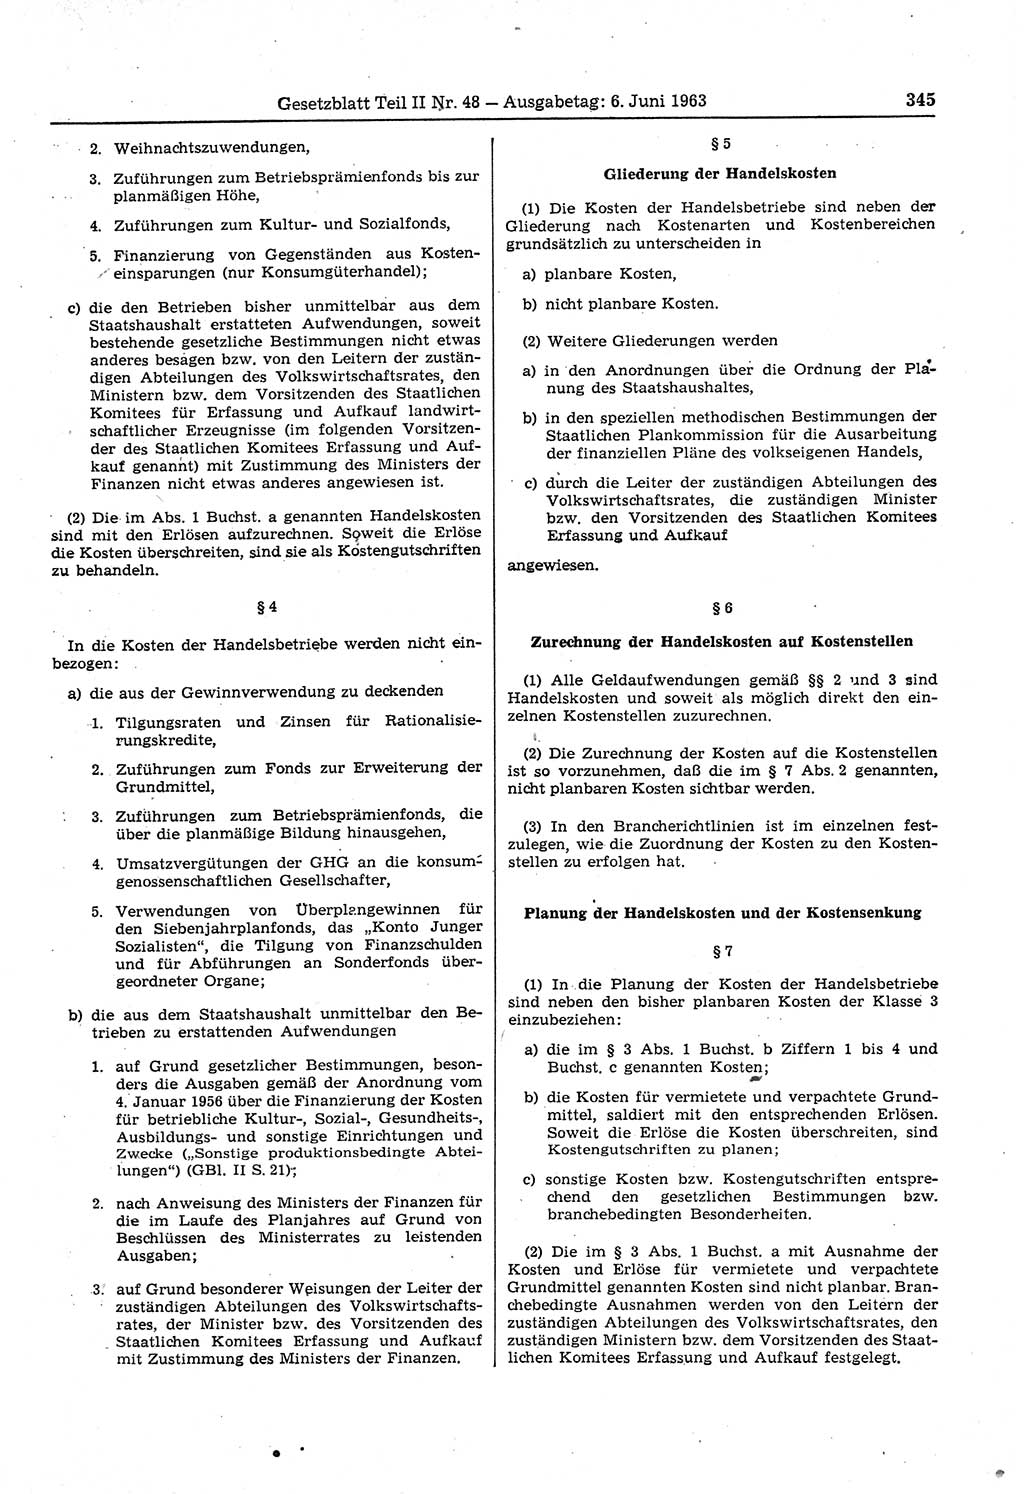 Gesetzblatt (GBl.) der Deutschen Demokratischen Republik (DDR) Teil ⅠⅠ 1963, Seite 345 (GBl. DDR ⅠⅠ 1963, S. 345)